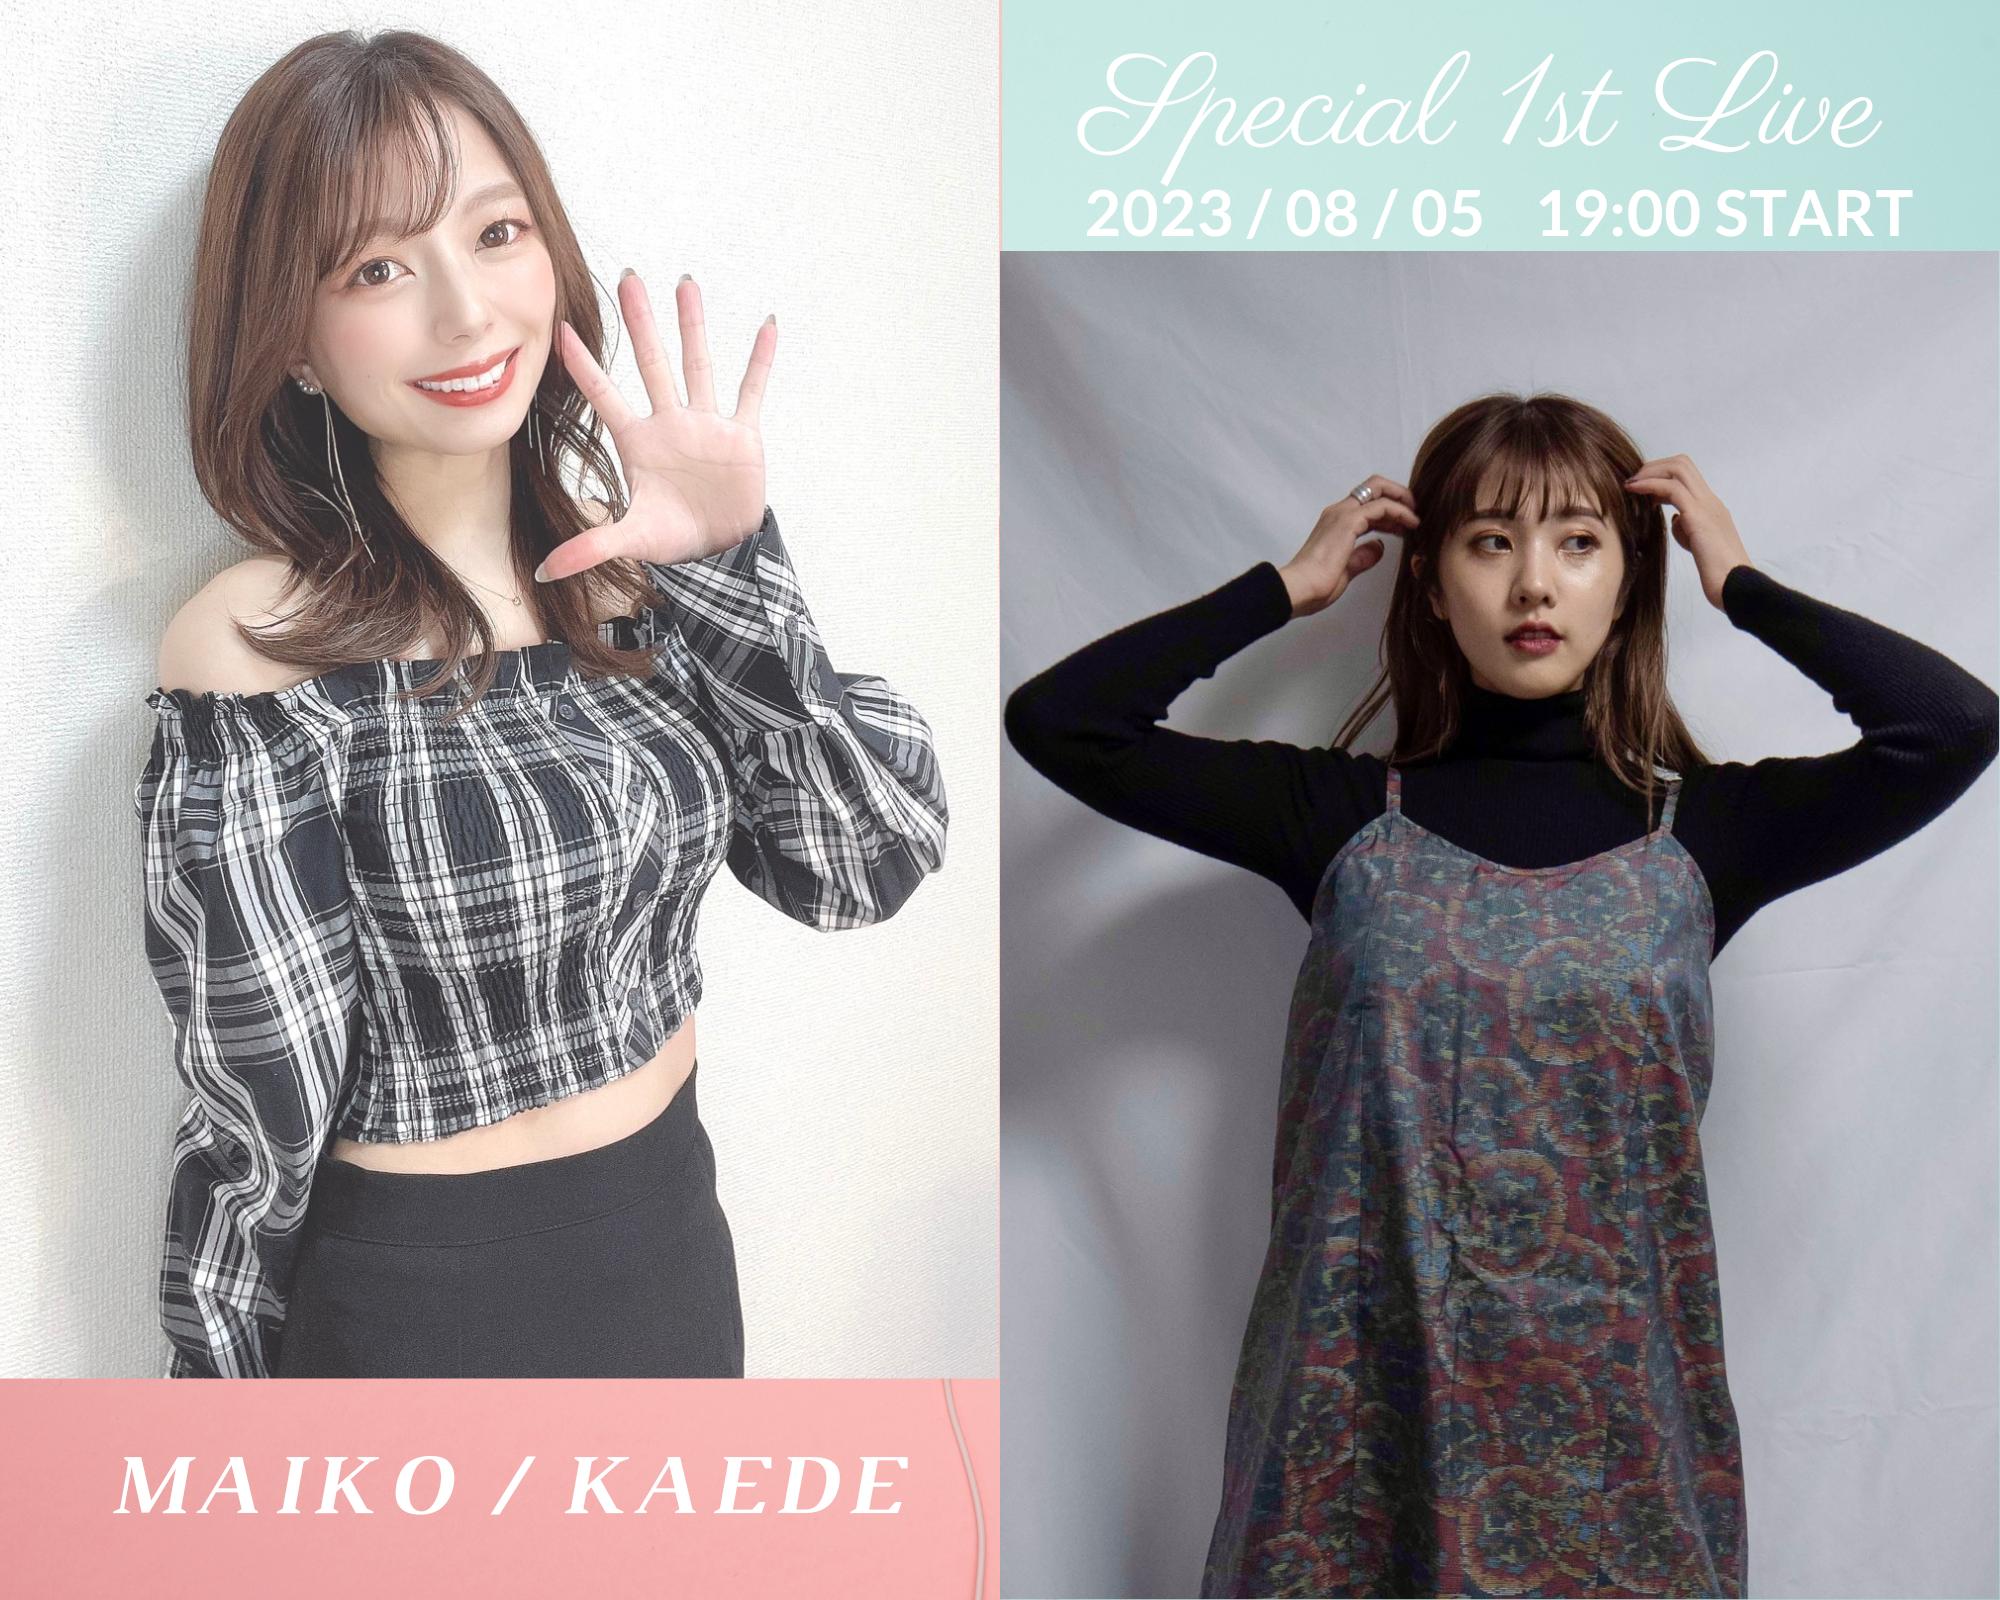 MAIKO / KAEDE Special 2Man LIVE